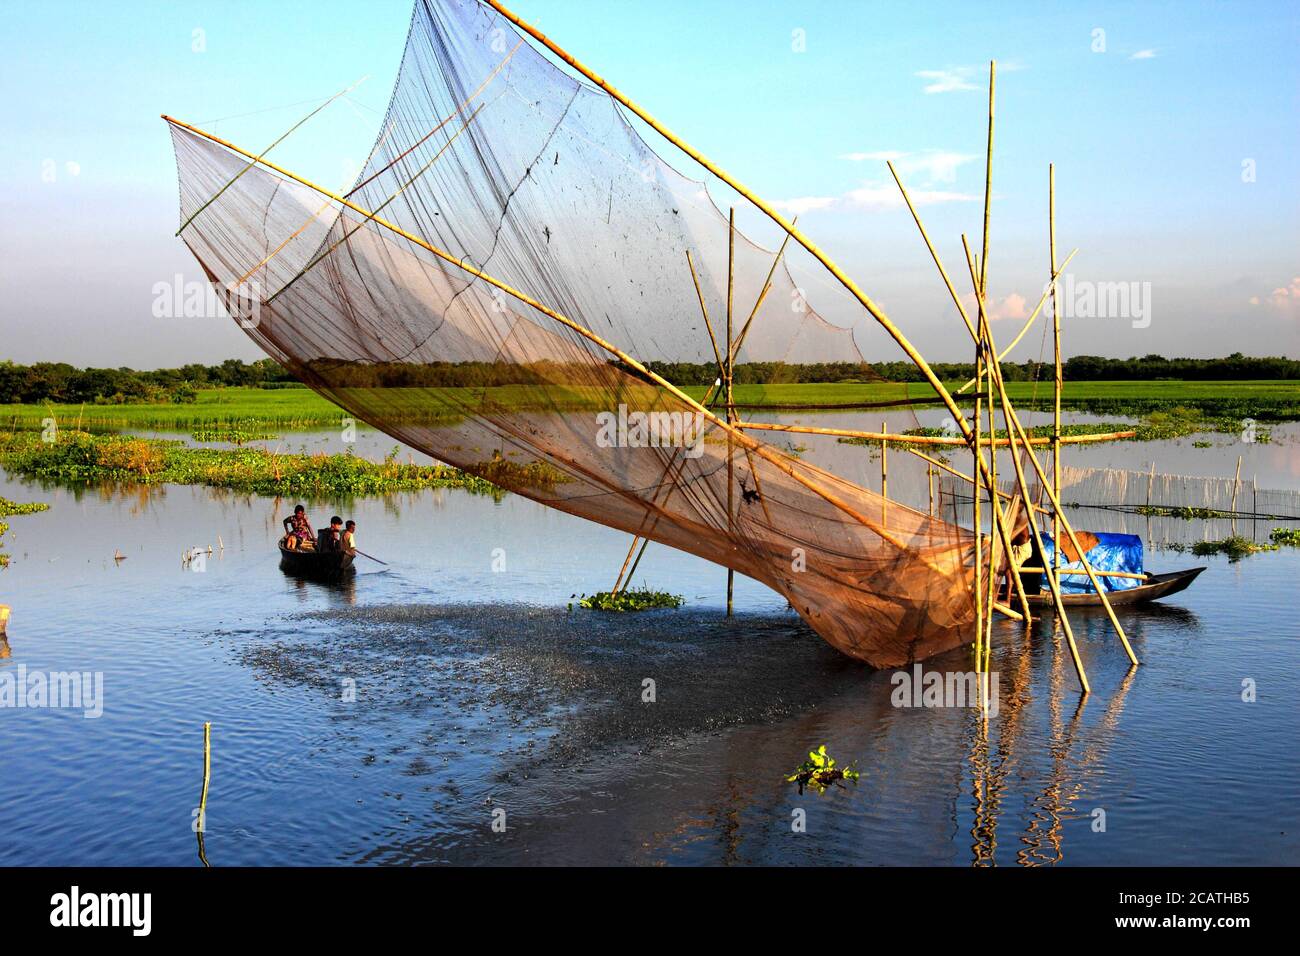 Photo de stock - pêche dans l'eau inondée. Manikganj, Bangladesh. Banque D'Images